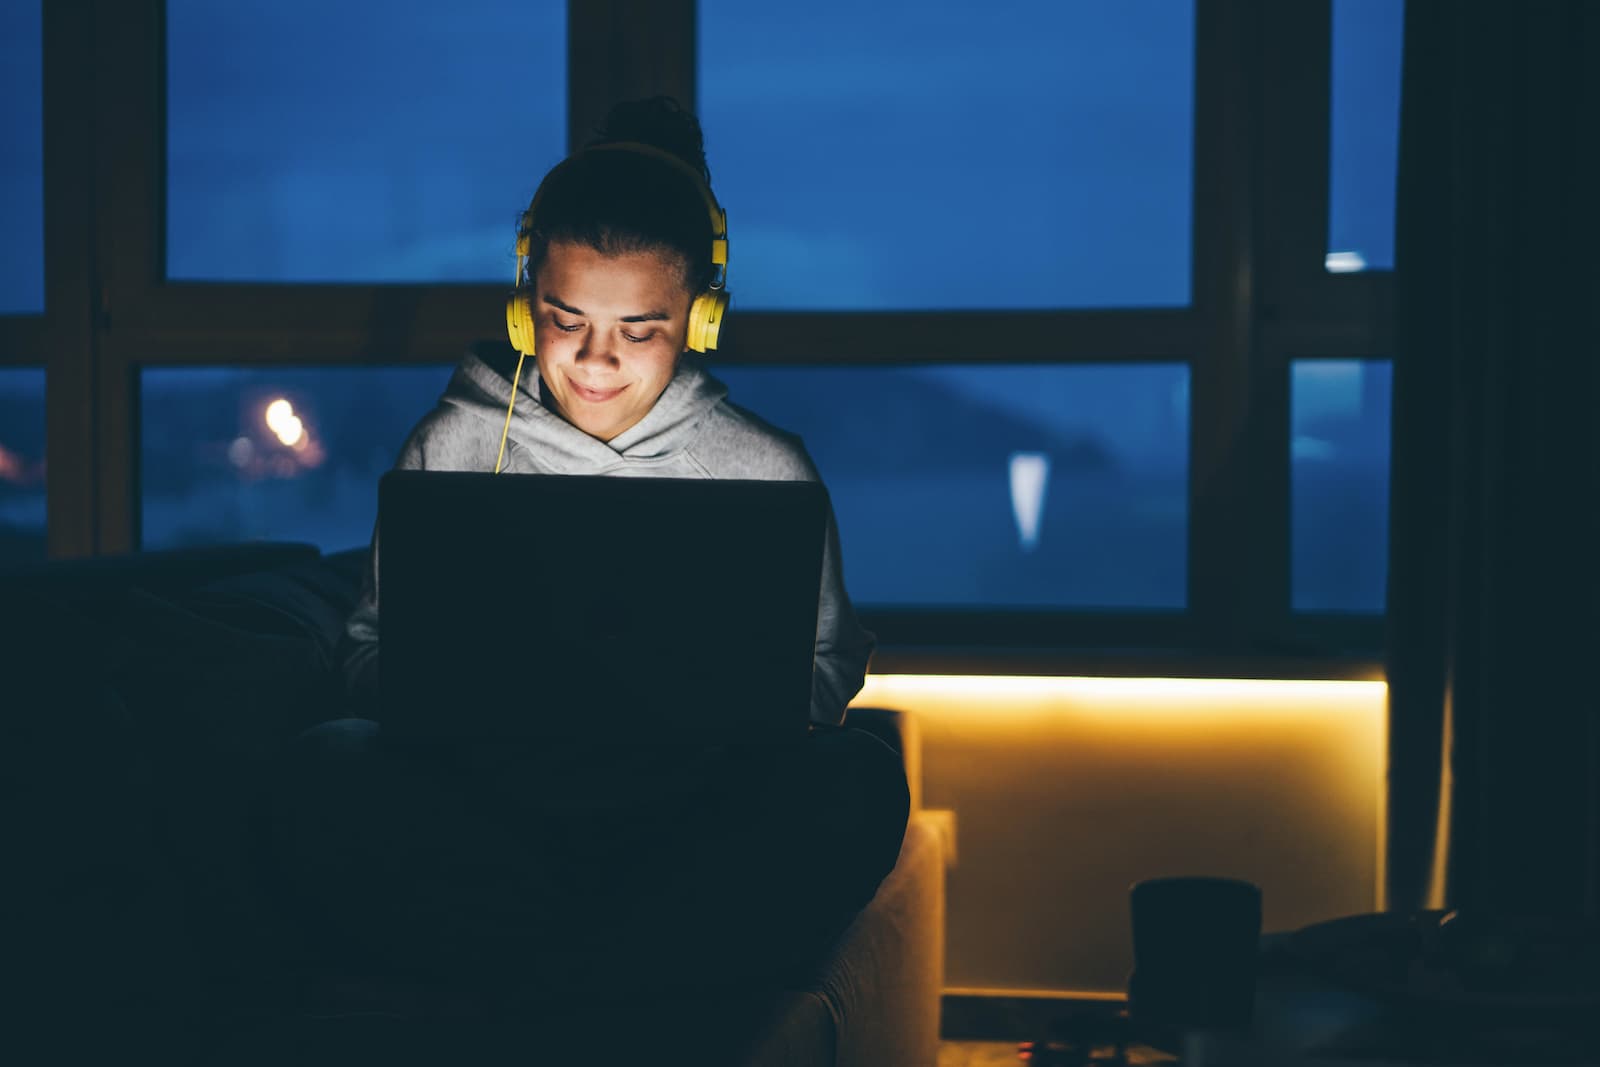 mujer estudia de noche con cascos amarillos frente al ordenador